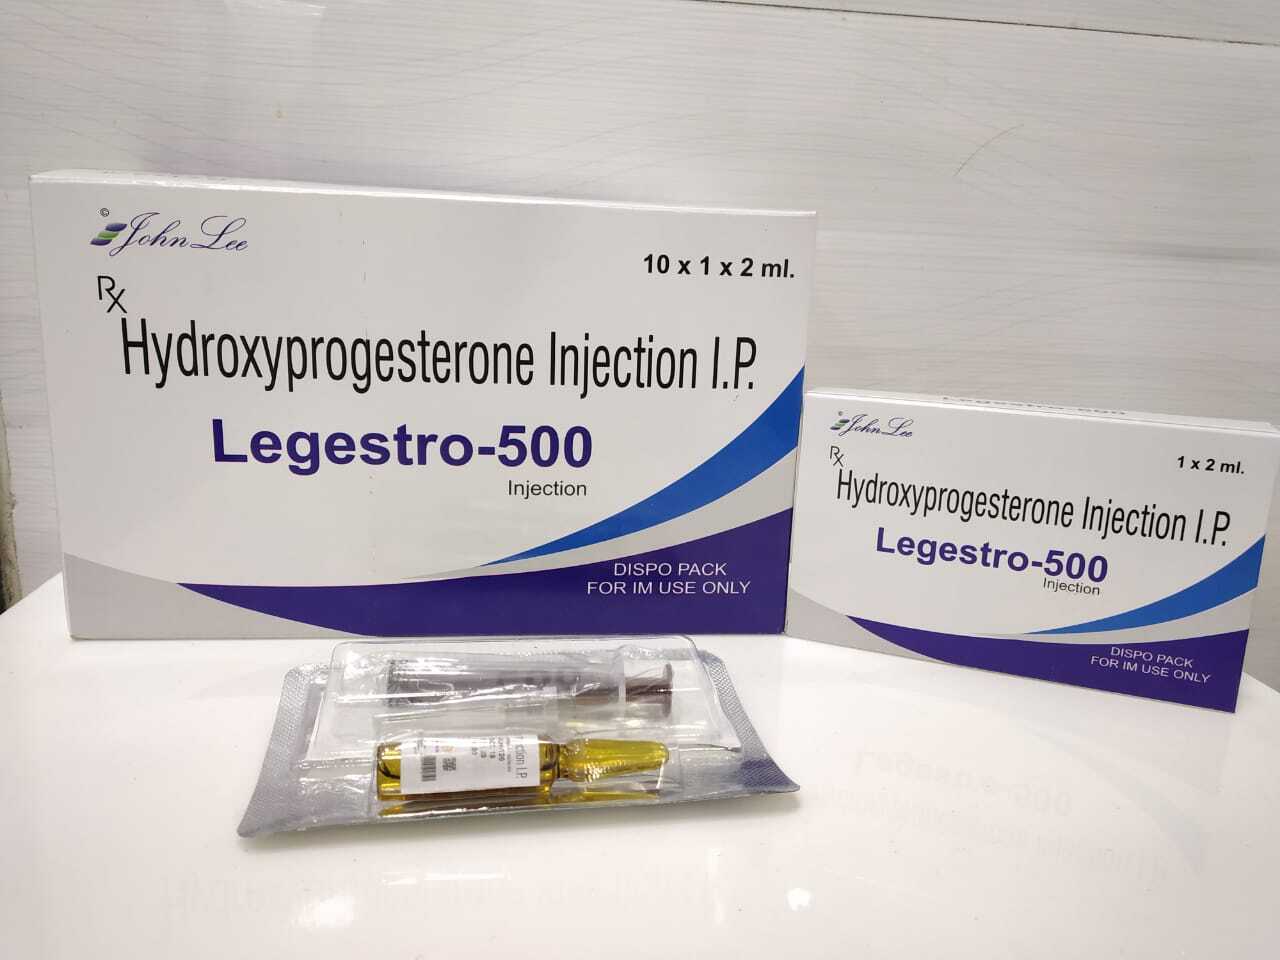 Hydroxy progesterone Caproate Injection